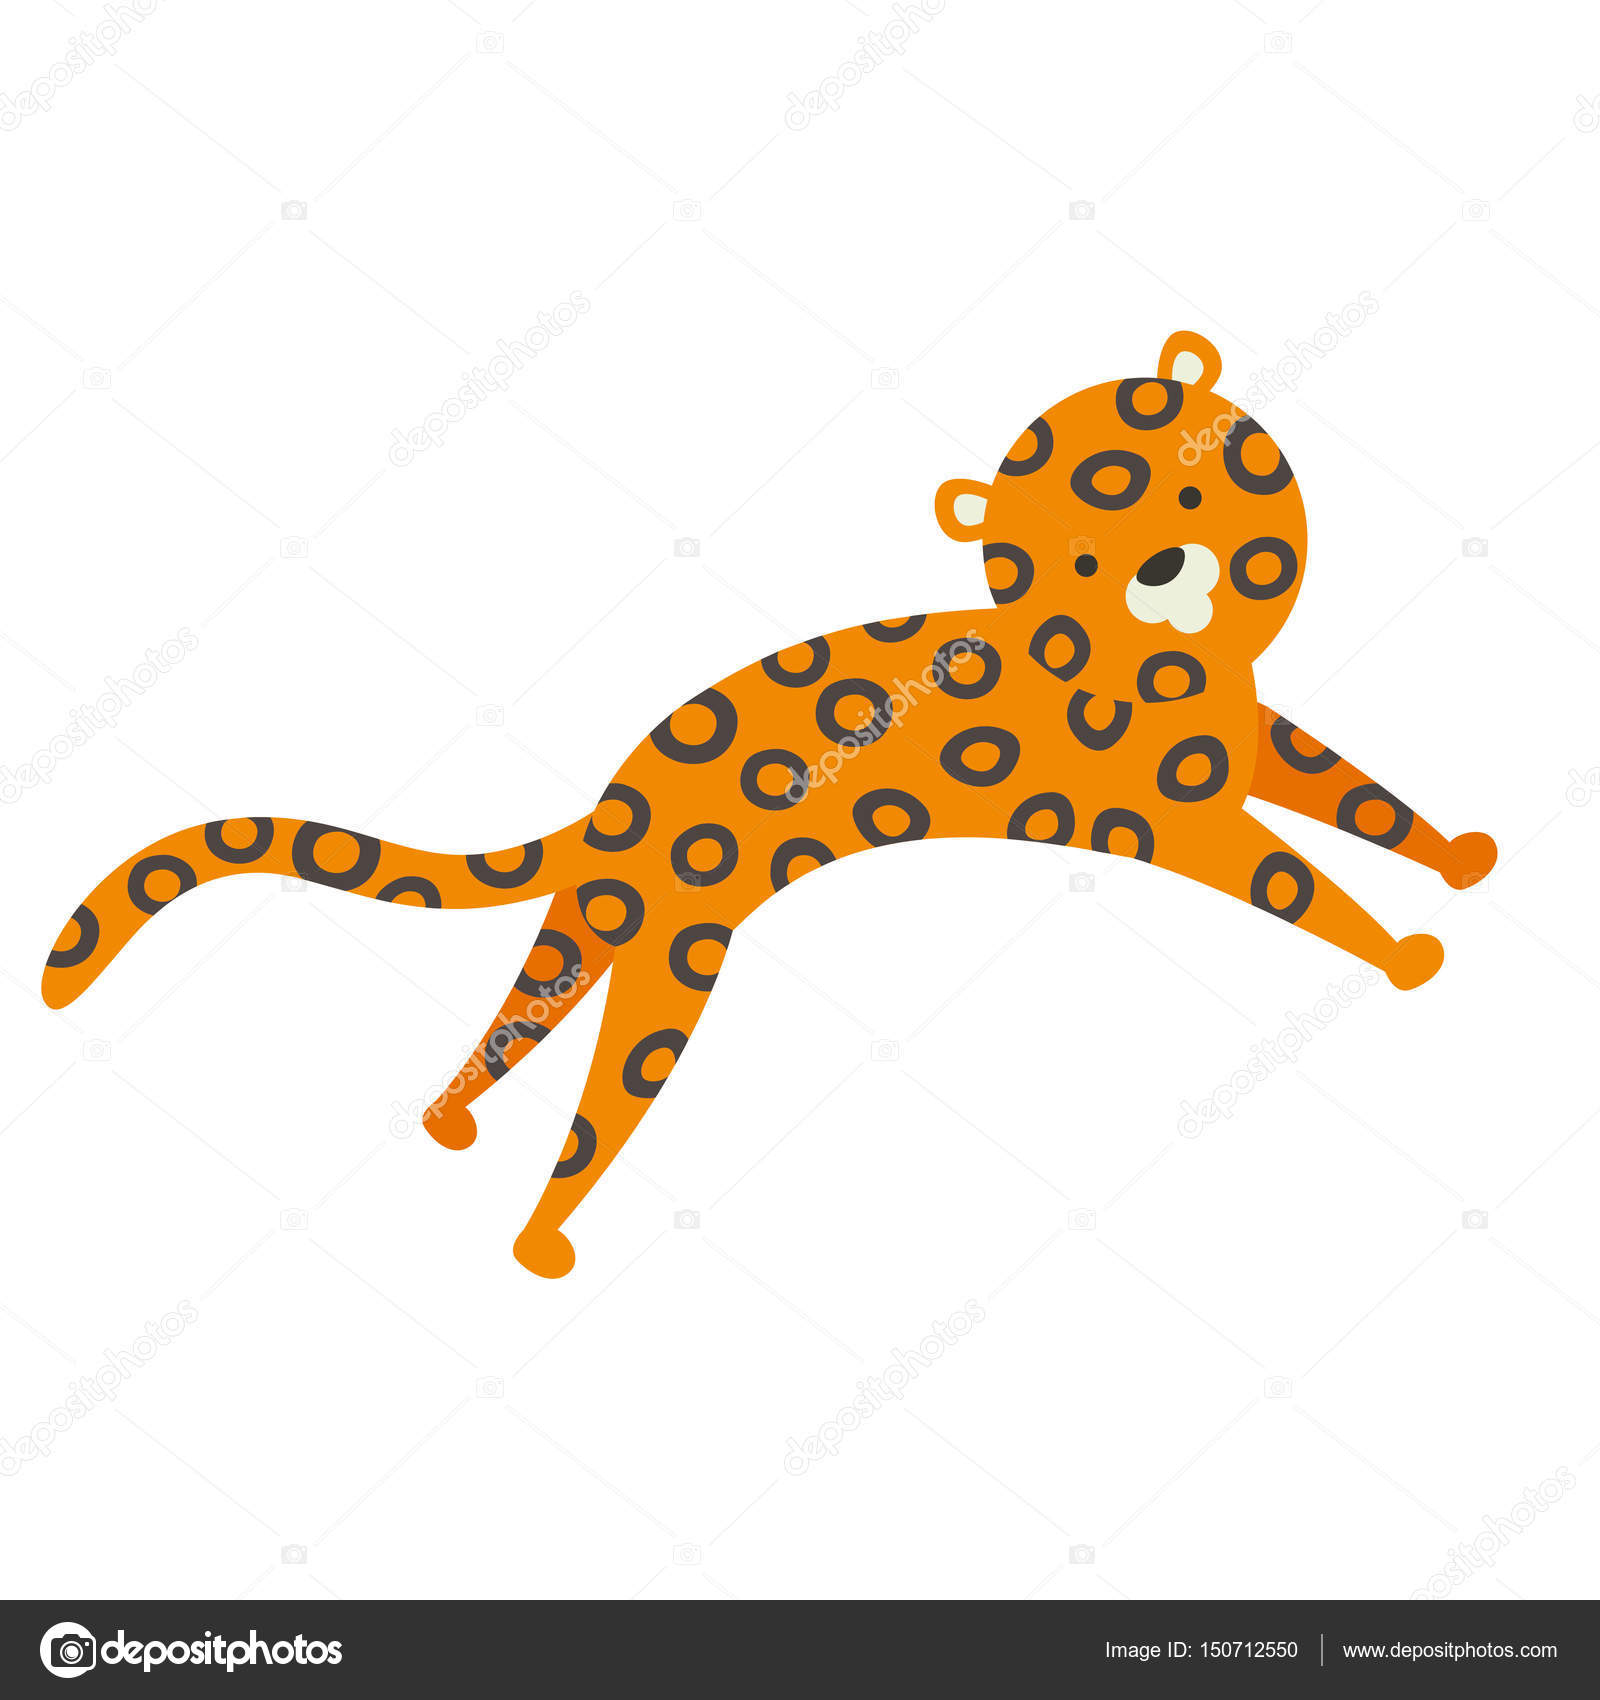 Jaguar icons | Noun Project